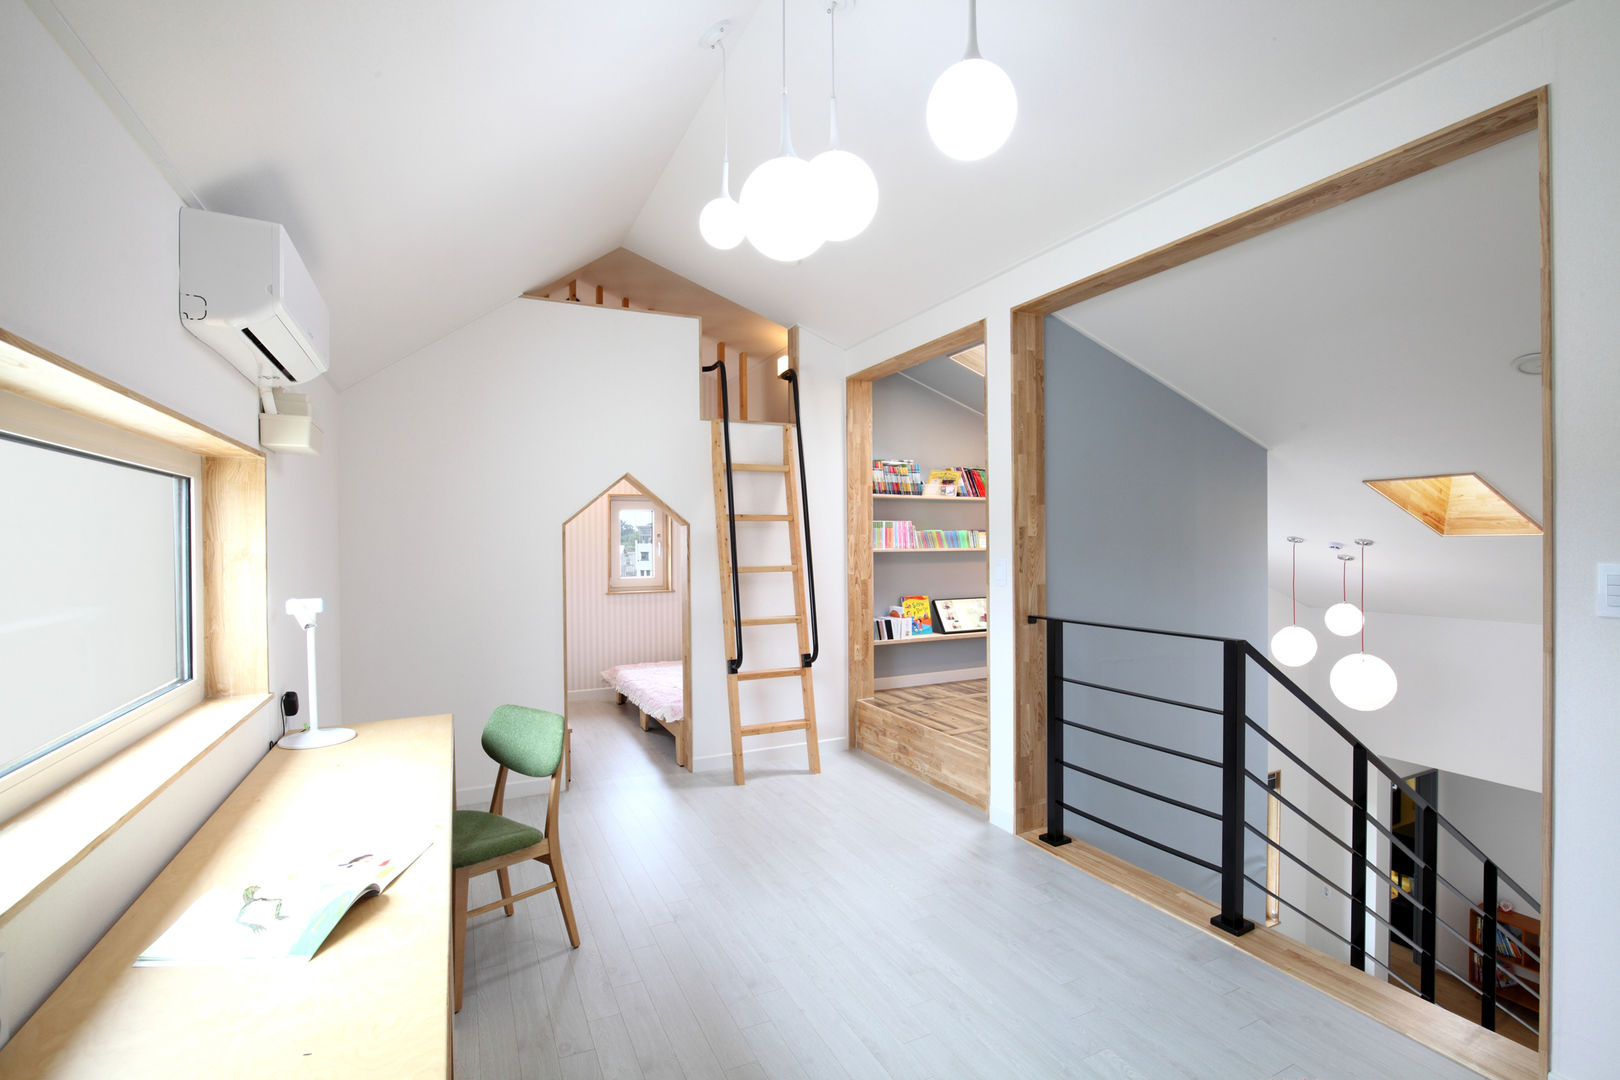 장성 - 세아이가 있는 하얀집, 주택설계전문 디자인그룹 홈스타일토토 주택설계전문 디자인그룹 홈스타일토토 Moderne kinderkamers Spaanplaat